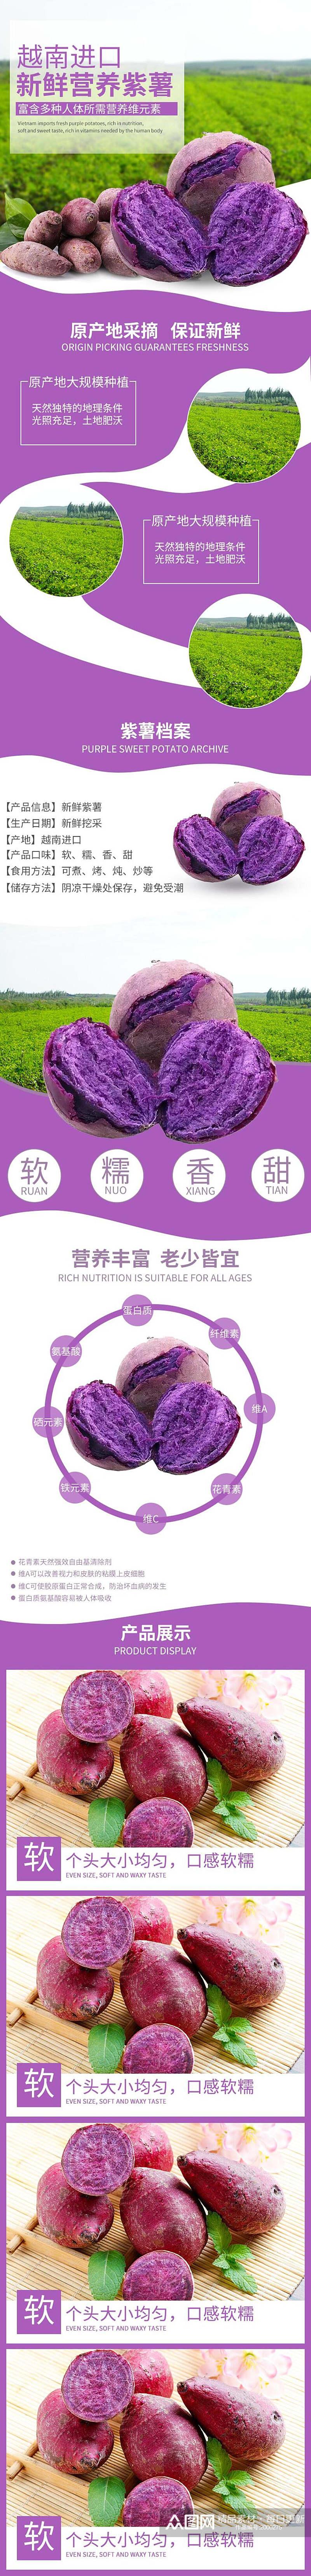 越南进口紫薯农产品土特产电商详情页素材